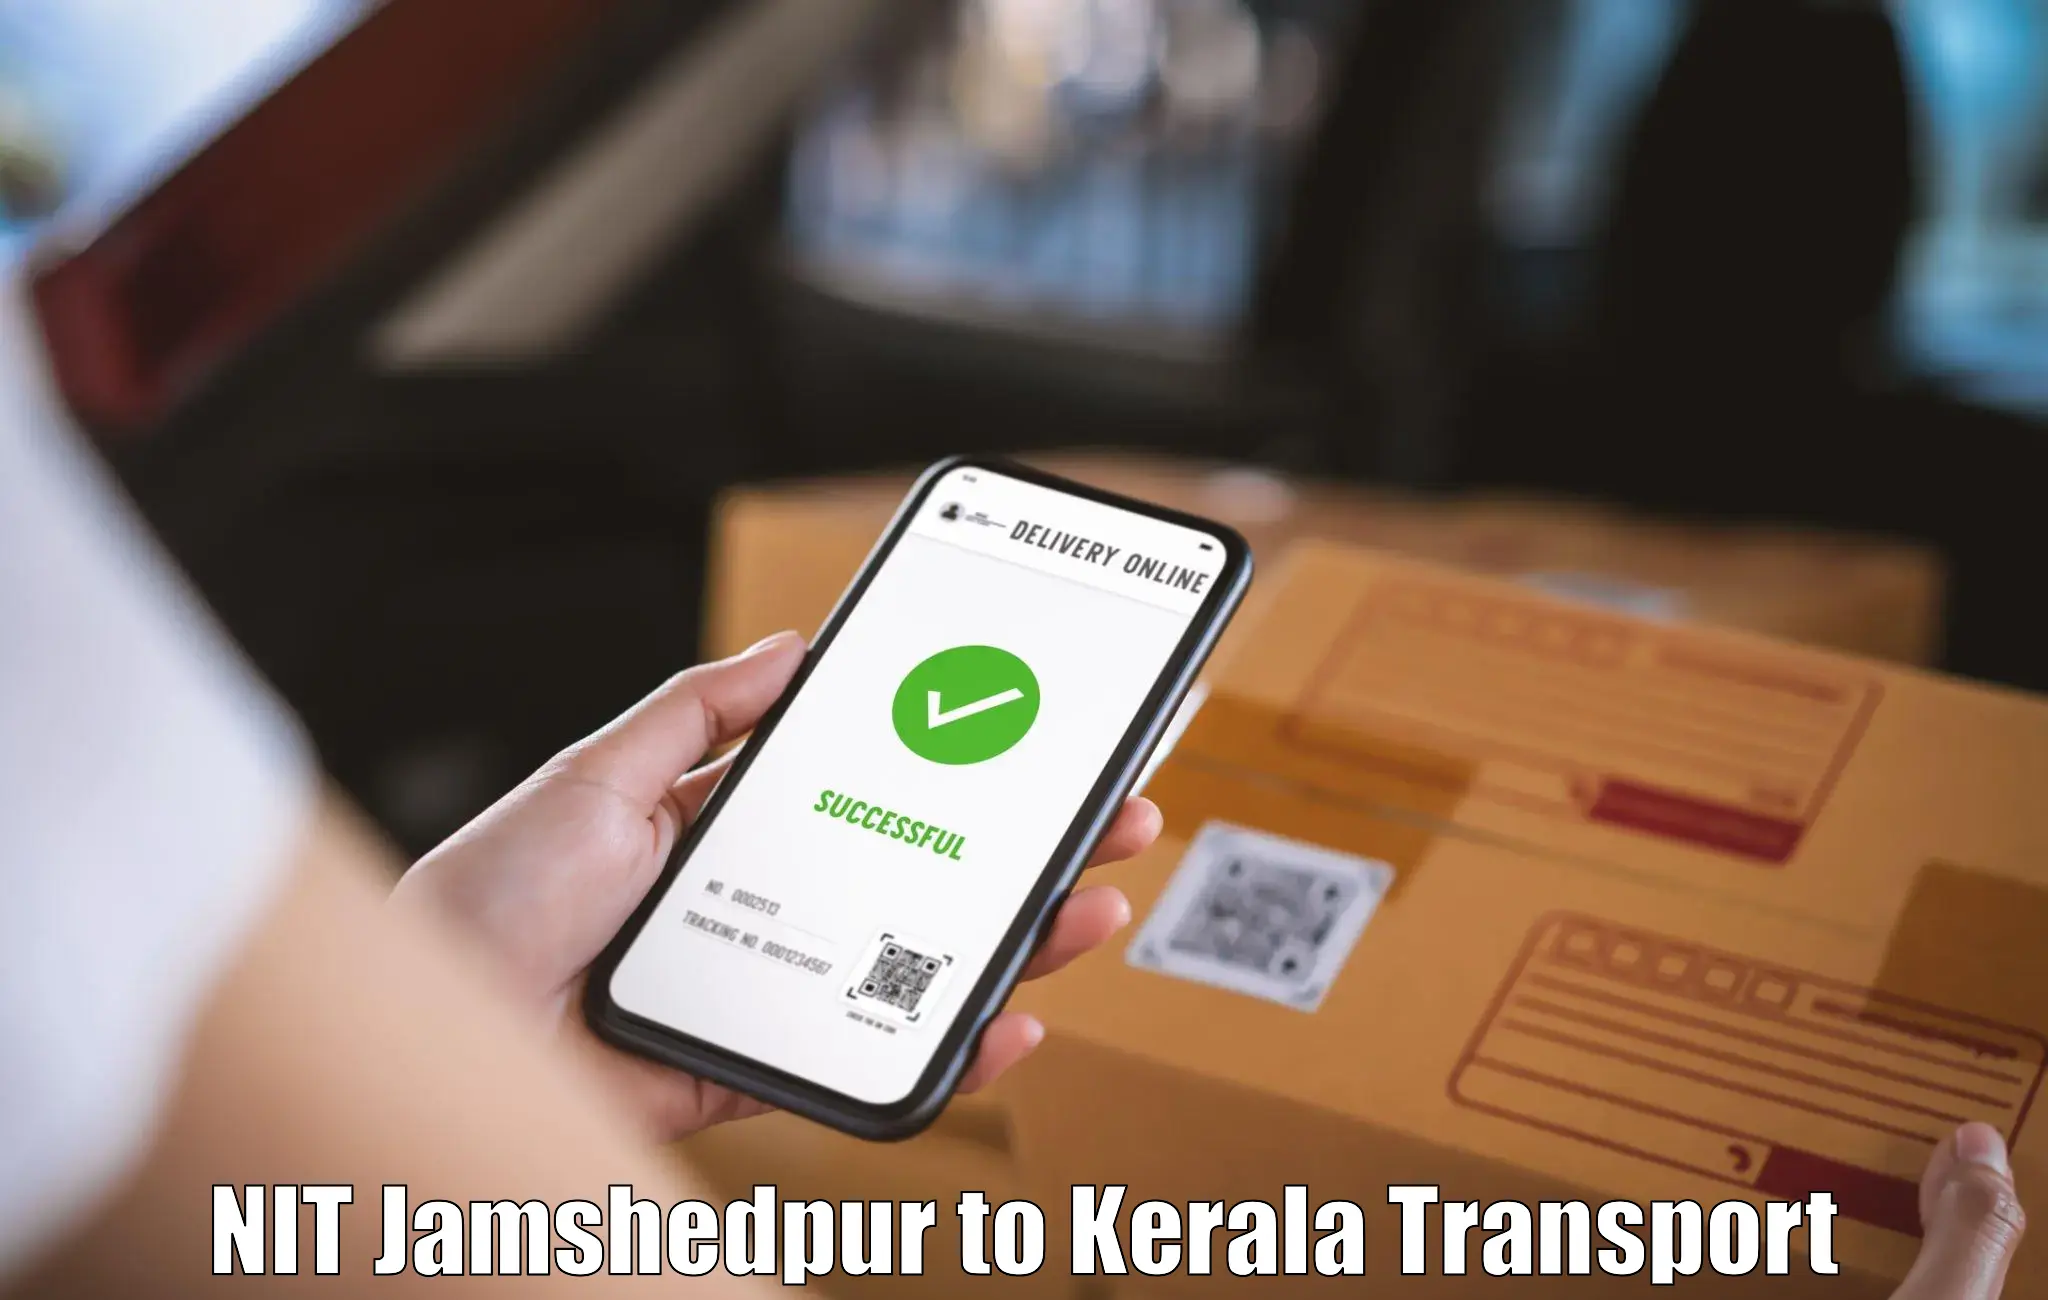 Transportation solution services NIT Jamshedpur to Kozhikode